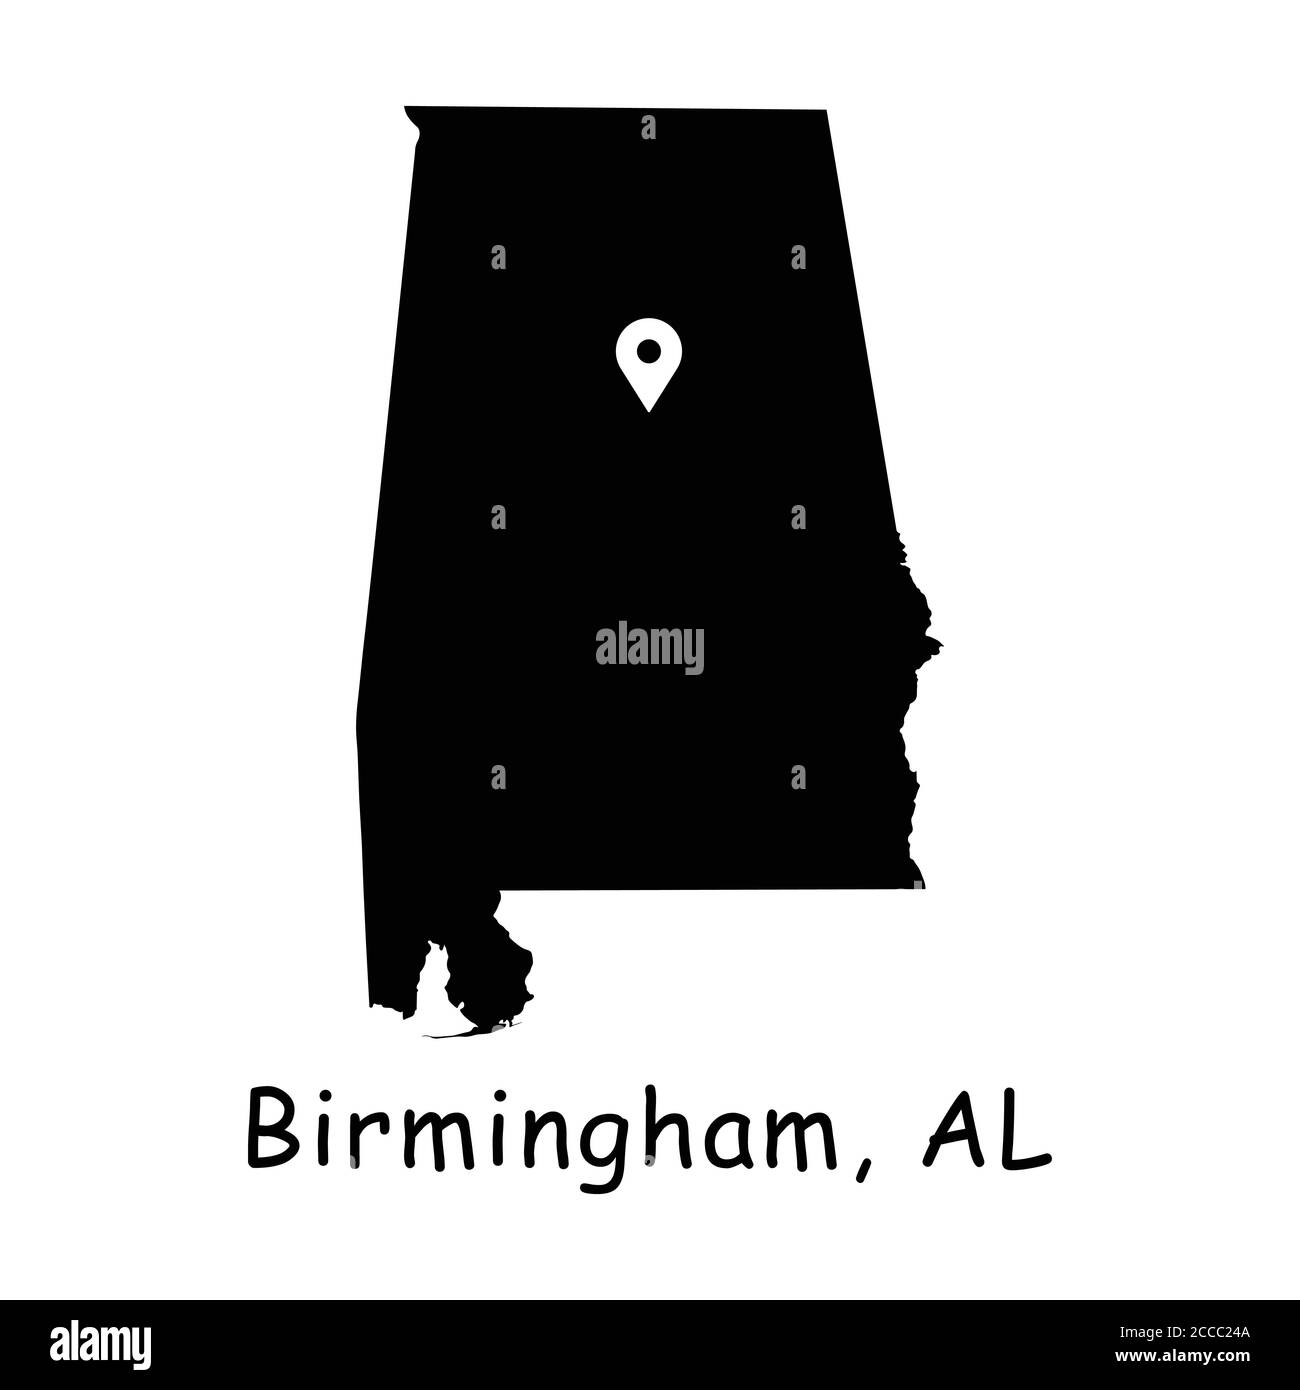 Birmingham auf Alabama State Map. Detaillierte AL State Map mit Location Pin auf Birmingham City. Schwarze Silhouette Vektorkarte isoliert auf weißem Hintergrund. Stock Vektor